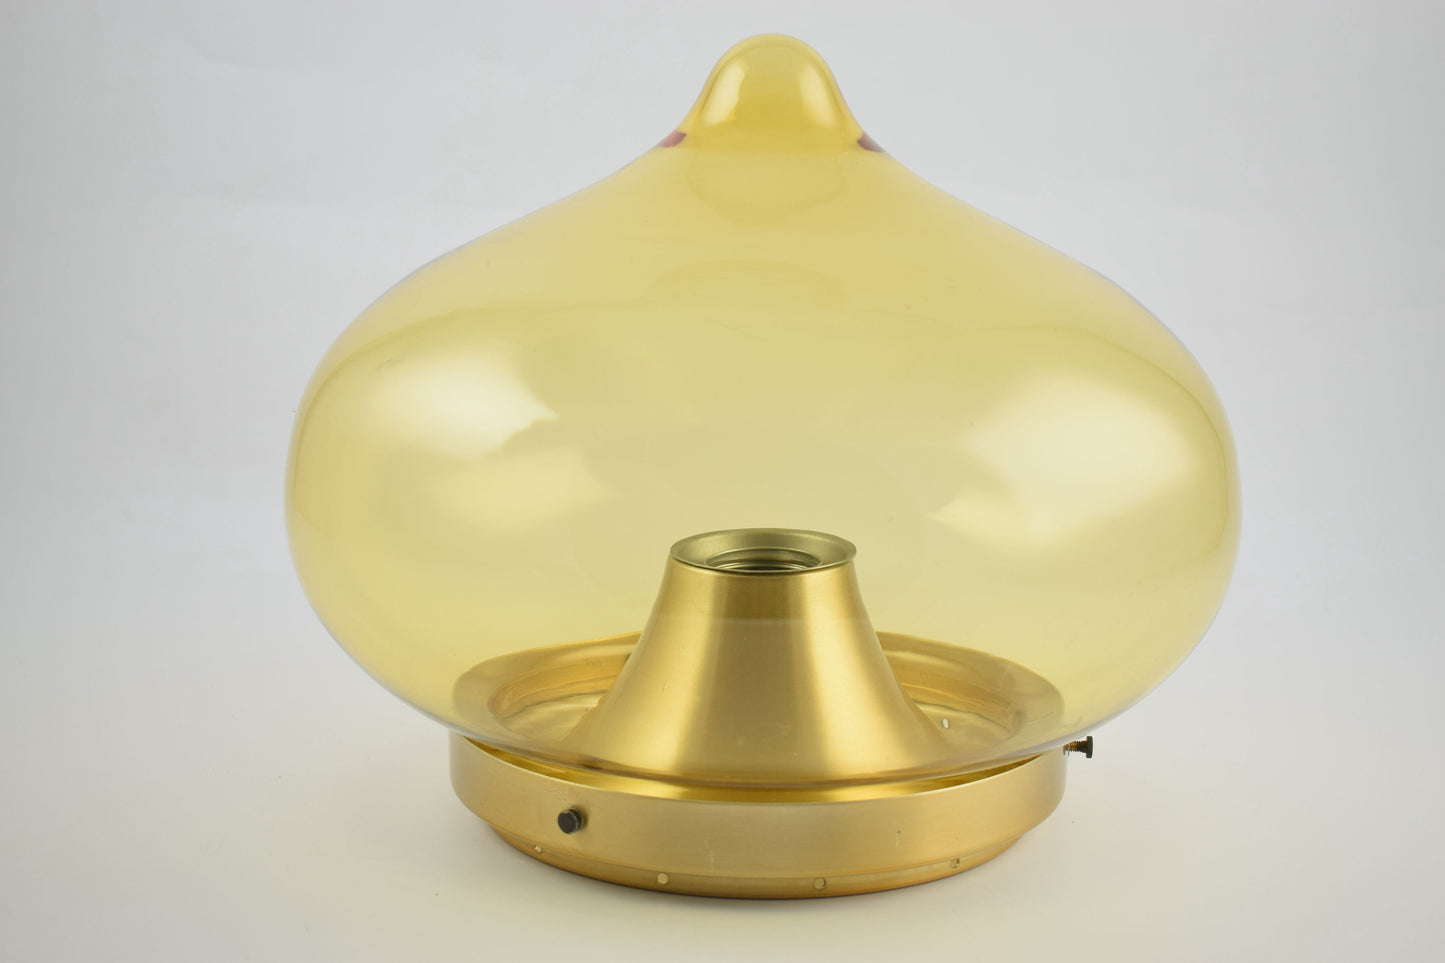 Lámpara de techo Dijkstra de color amarillo ocre de los años setenta, la druppel o drop